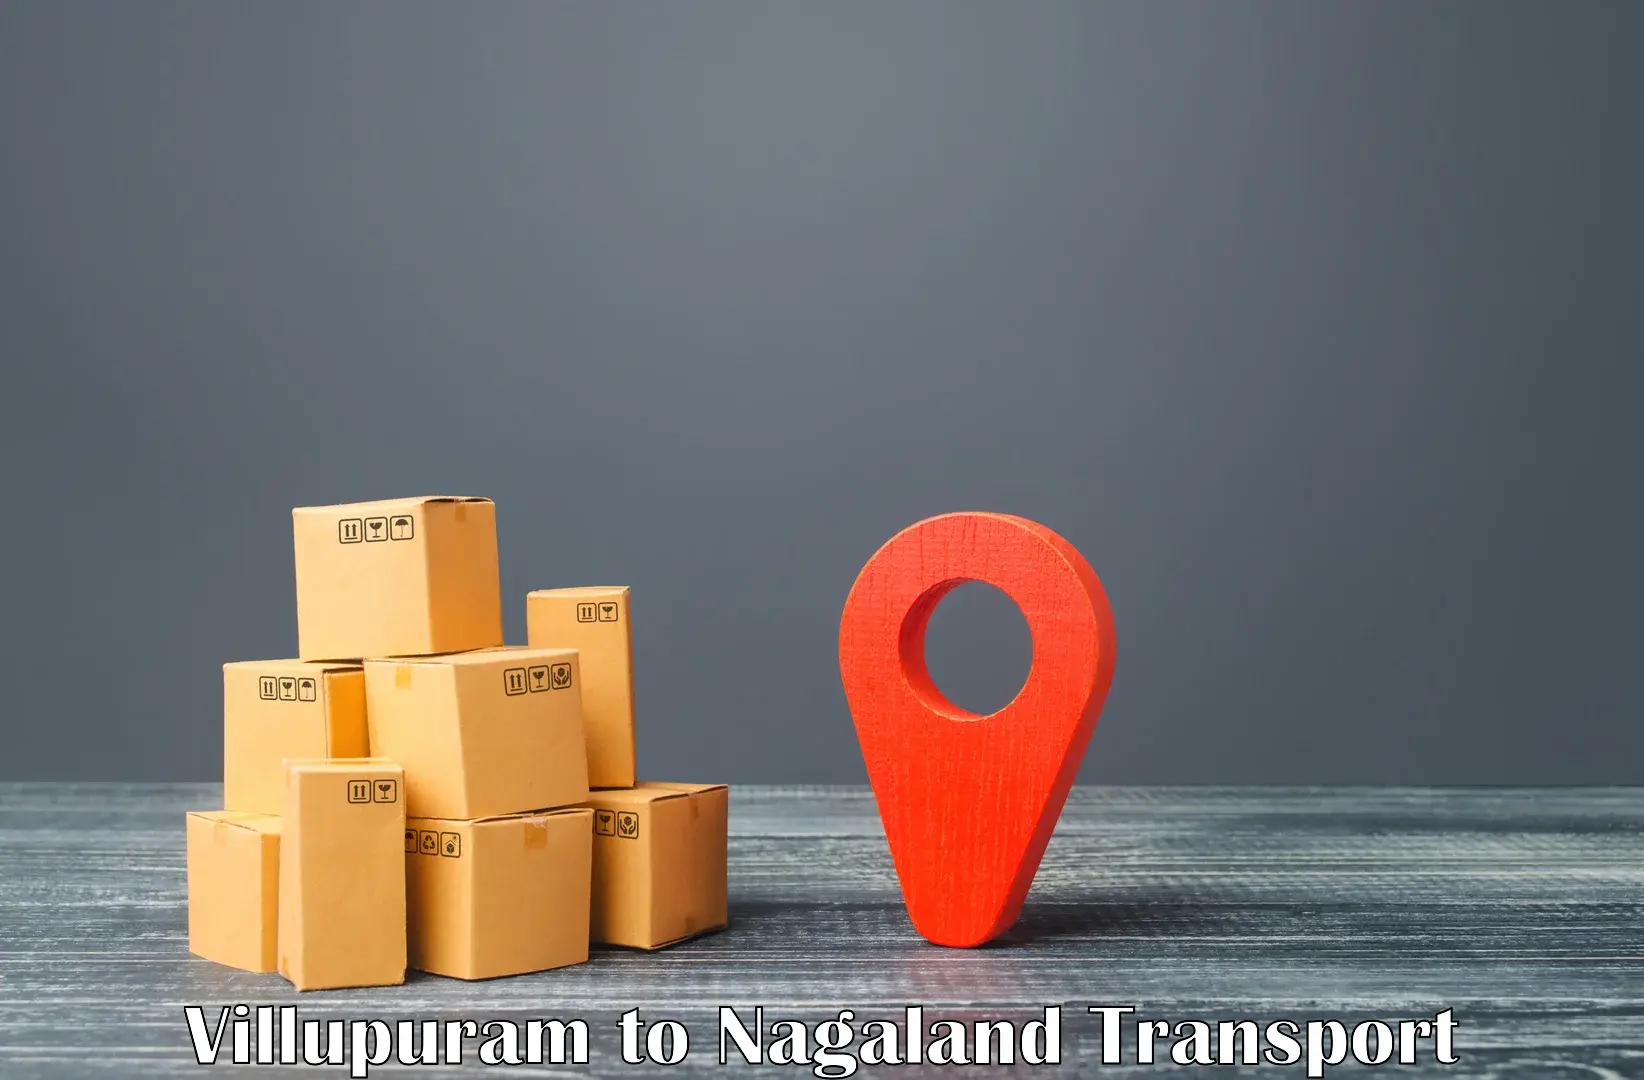 Container transport service Villupuram to Peren